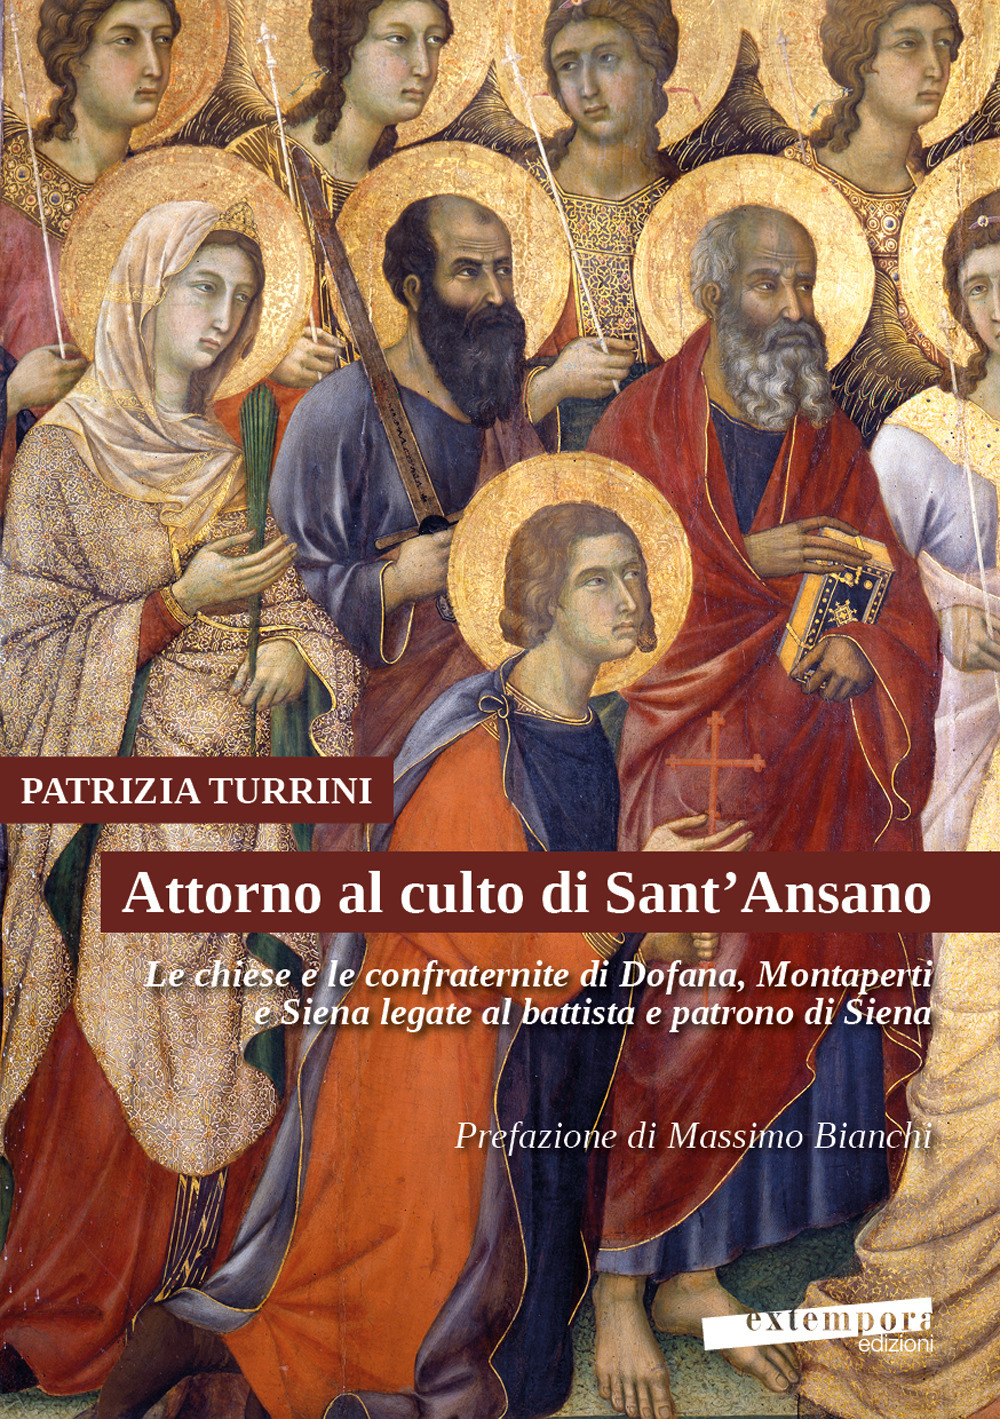 Attorno al culto di Sant'Ansano. Le chiese e le confraternite di Dofana, Montaperti e Siena legate al battista e patrono di Siena